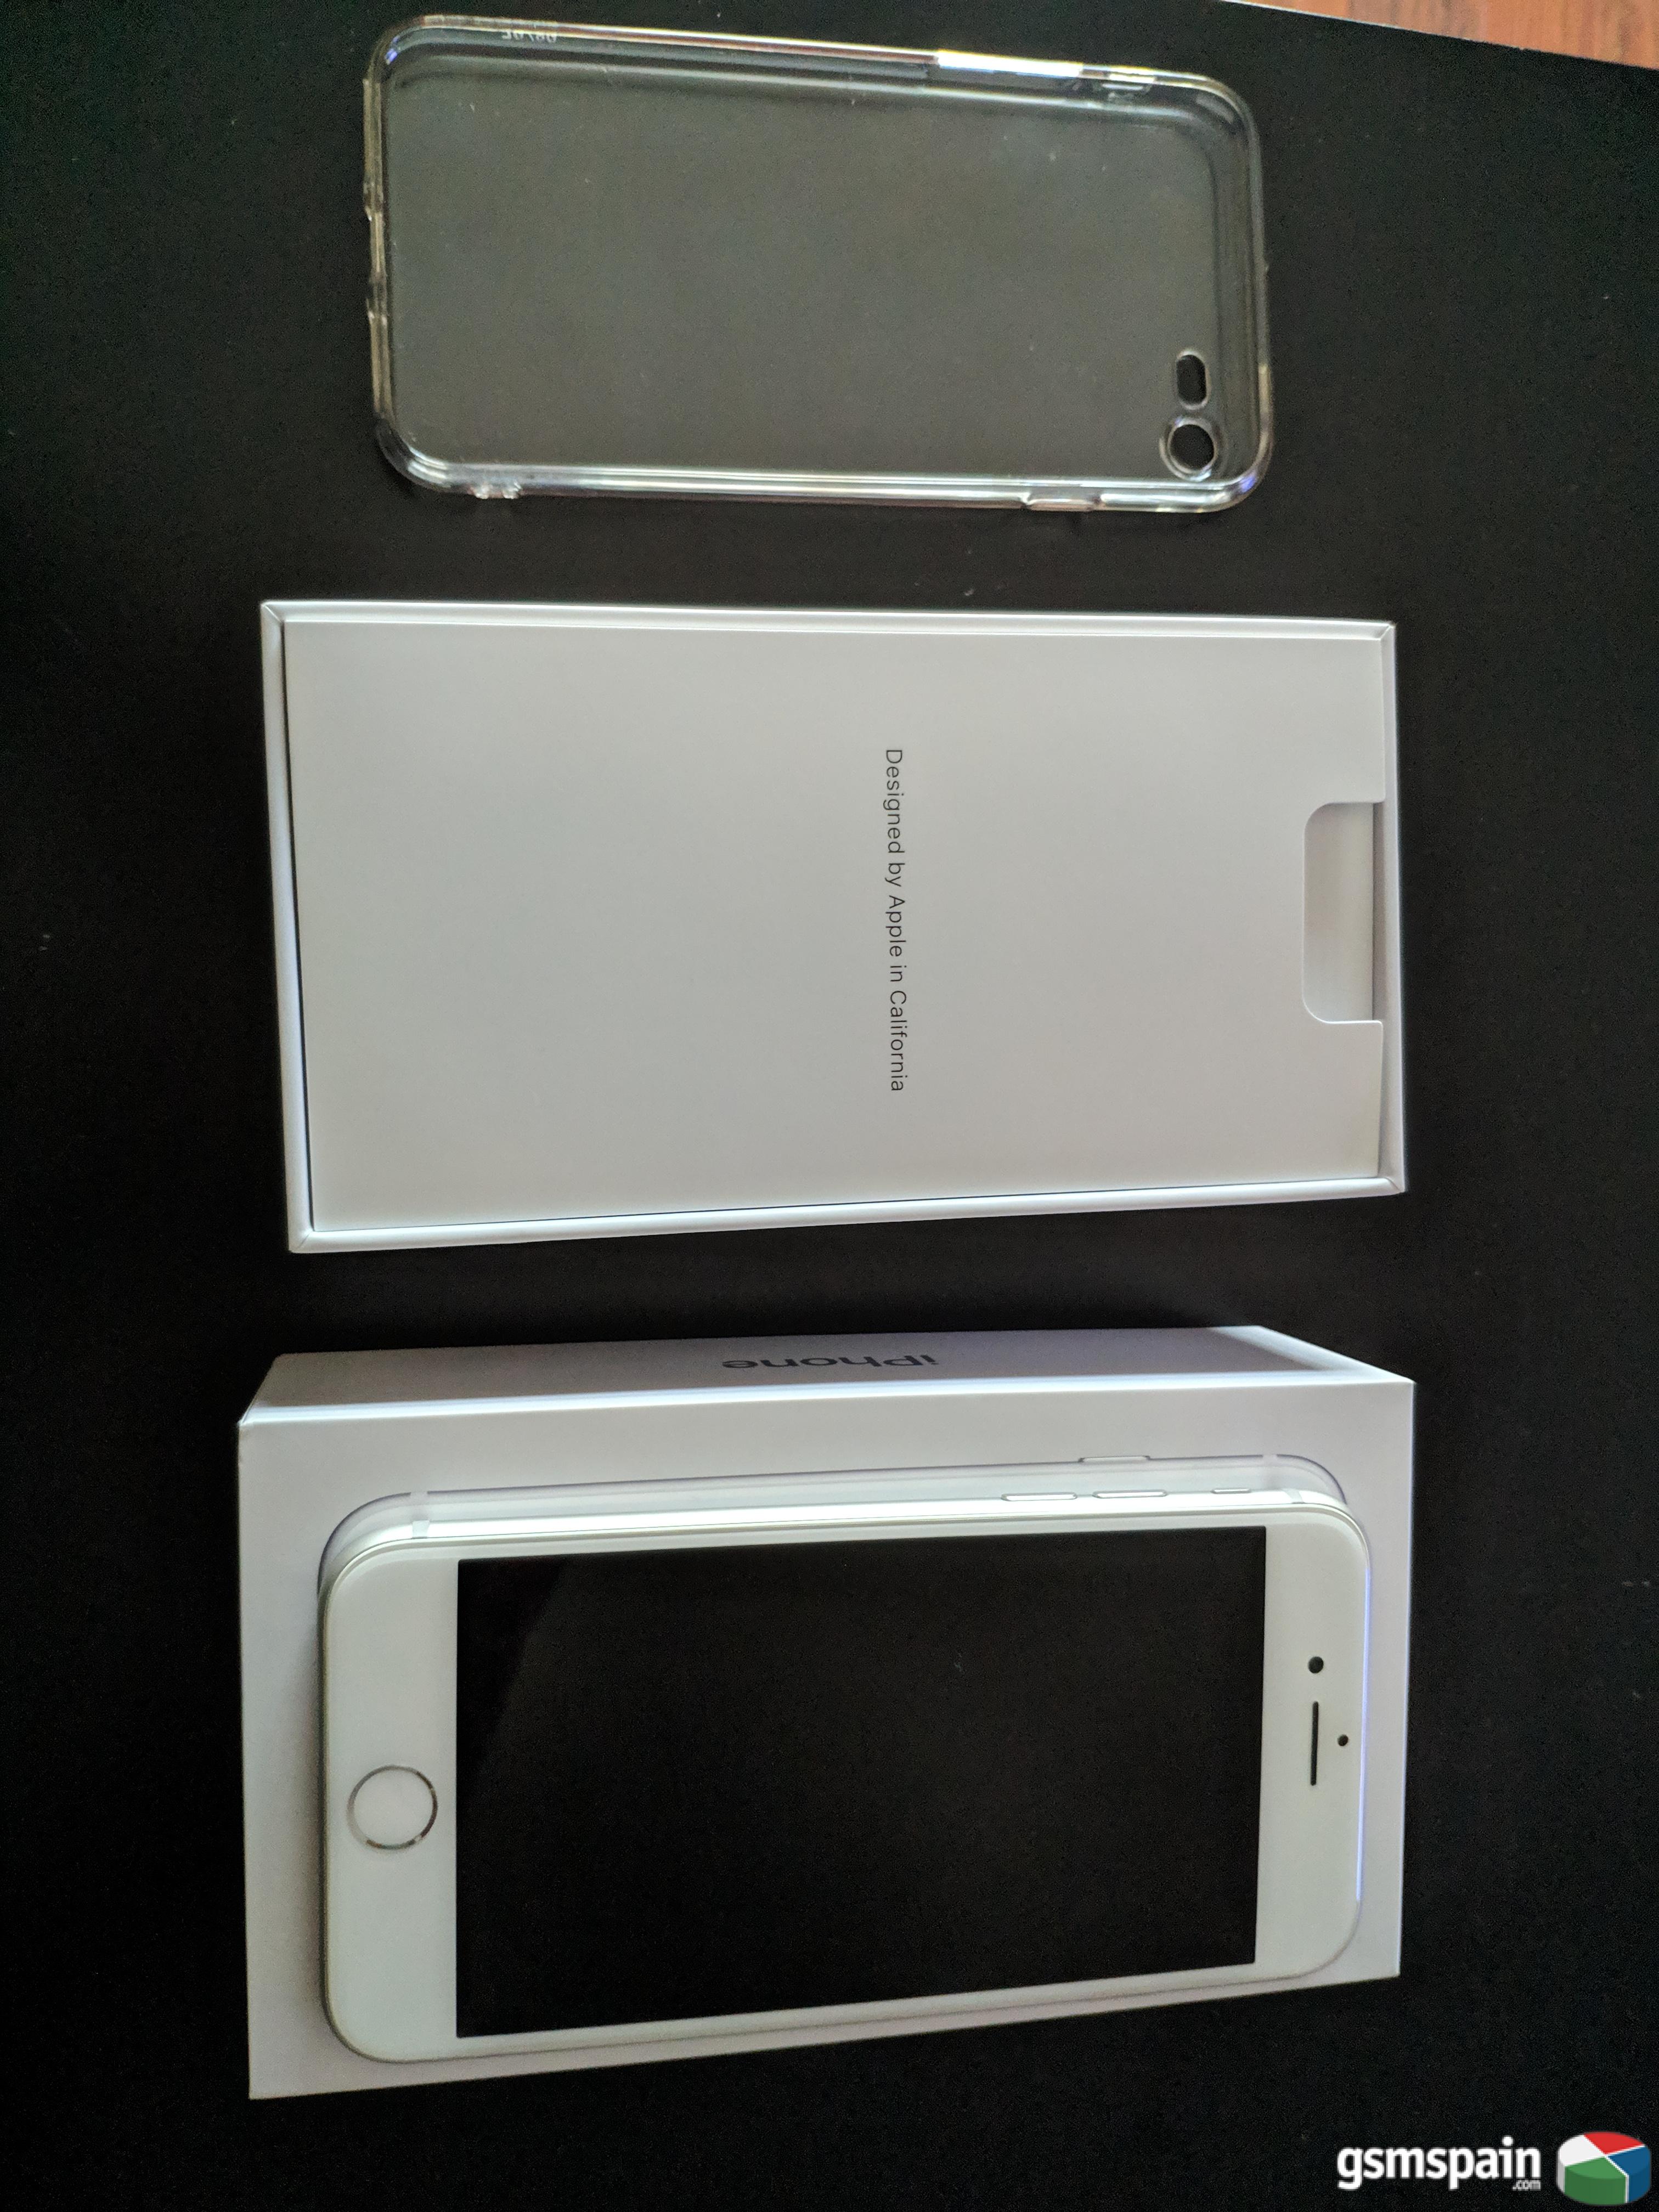 [VENDO] Iphone 8 - Blanco - 64 Gb - Impecable - Garanta y factura - Accesorios nuevos